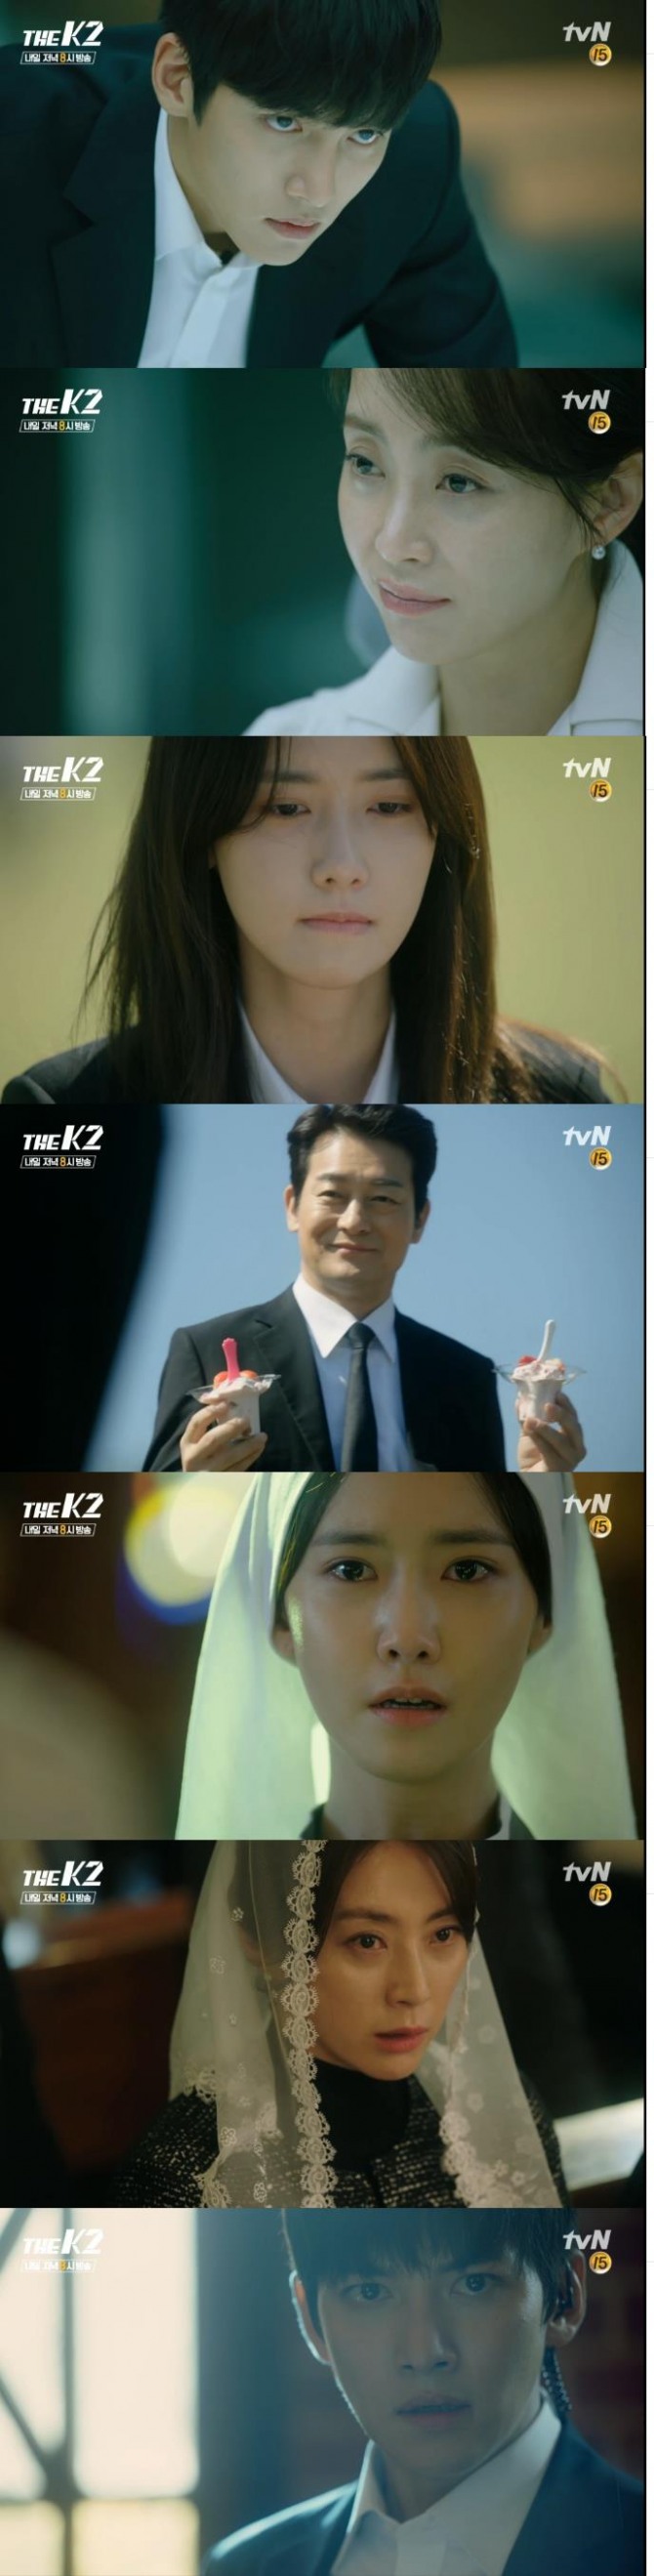 8일 밤 방송되는 tvN 금토드라마 '더 케이투(THE K2)' 6회에서는 김제하(지창욱)의 감시가 소홀한 틈을 타서 고안나(임윤아)가 탈출을 감행하는 장면이 그려진다./사진=tvN 영상 캡처